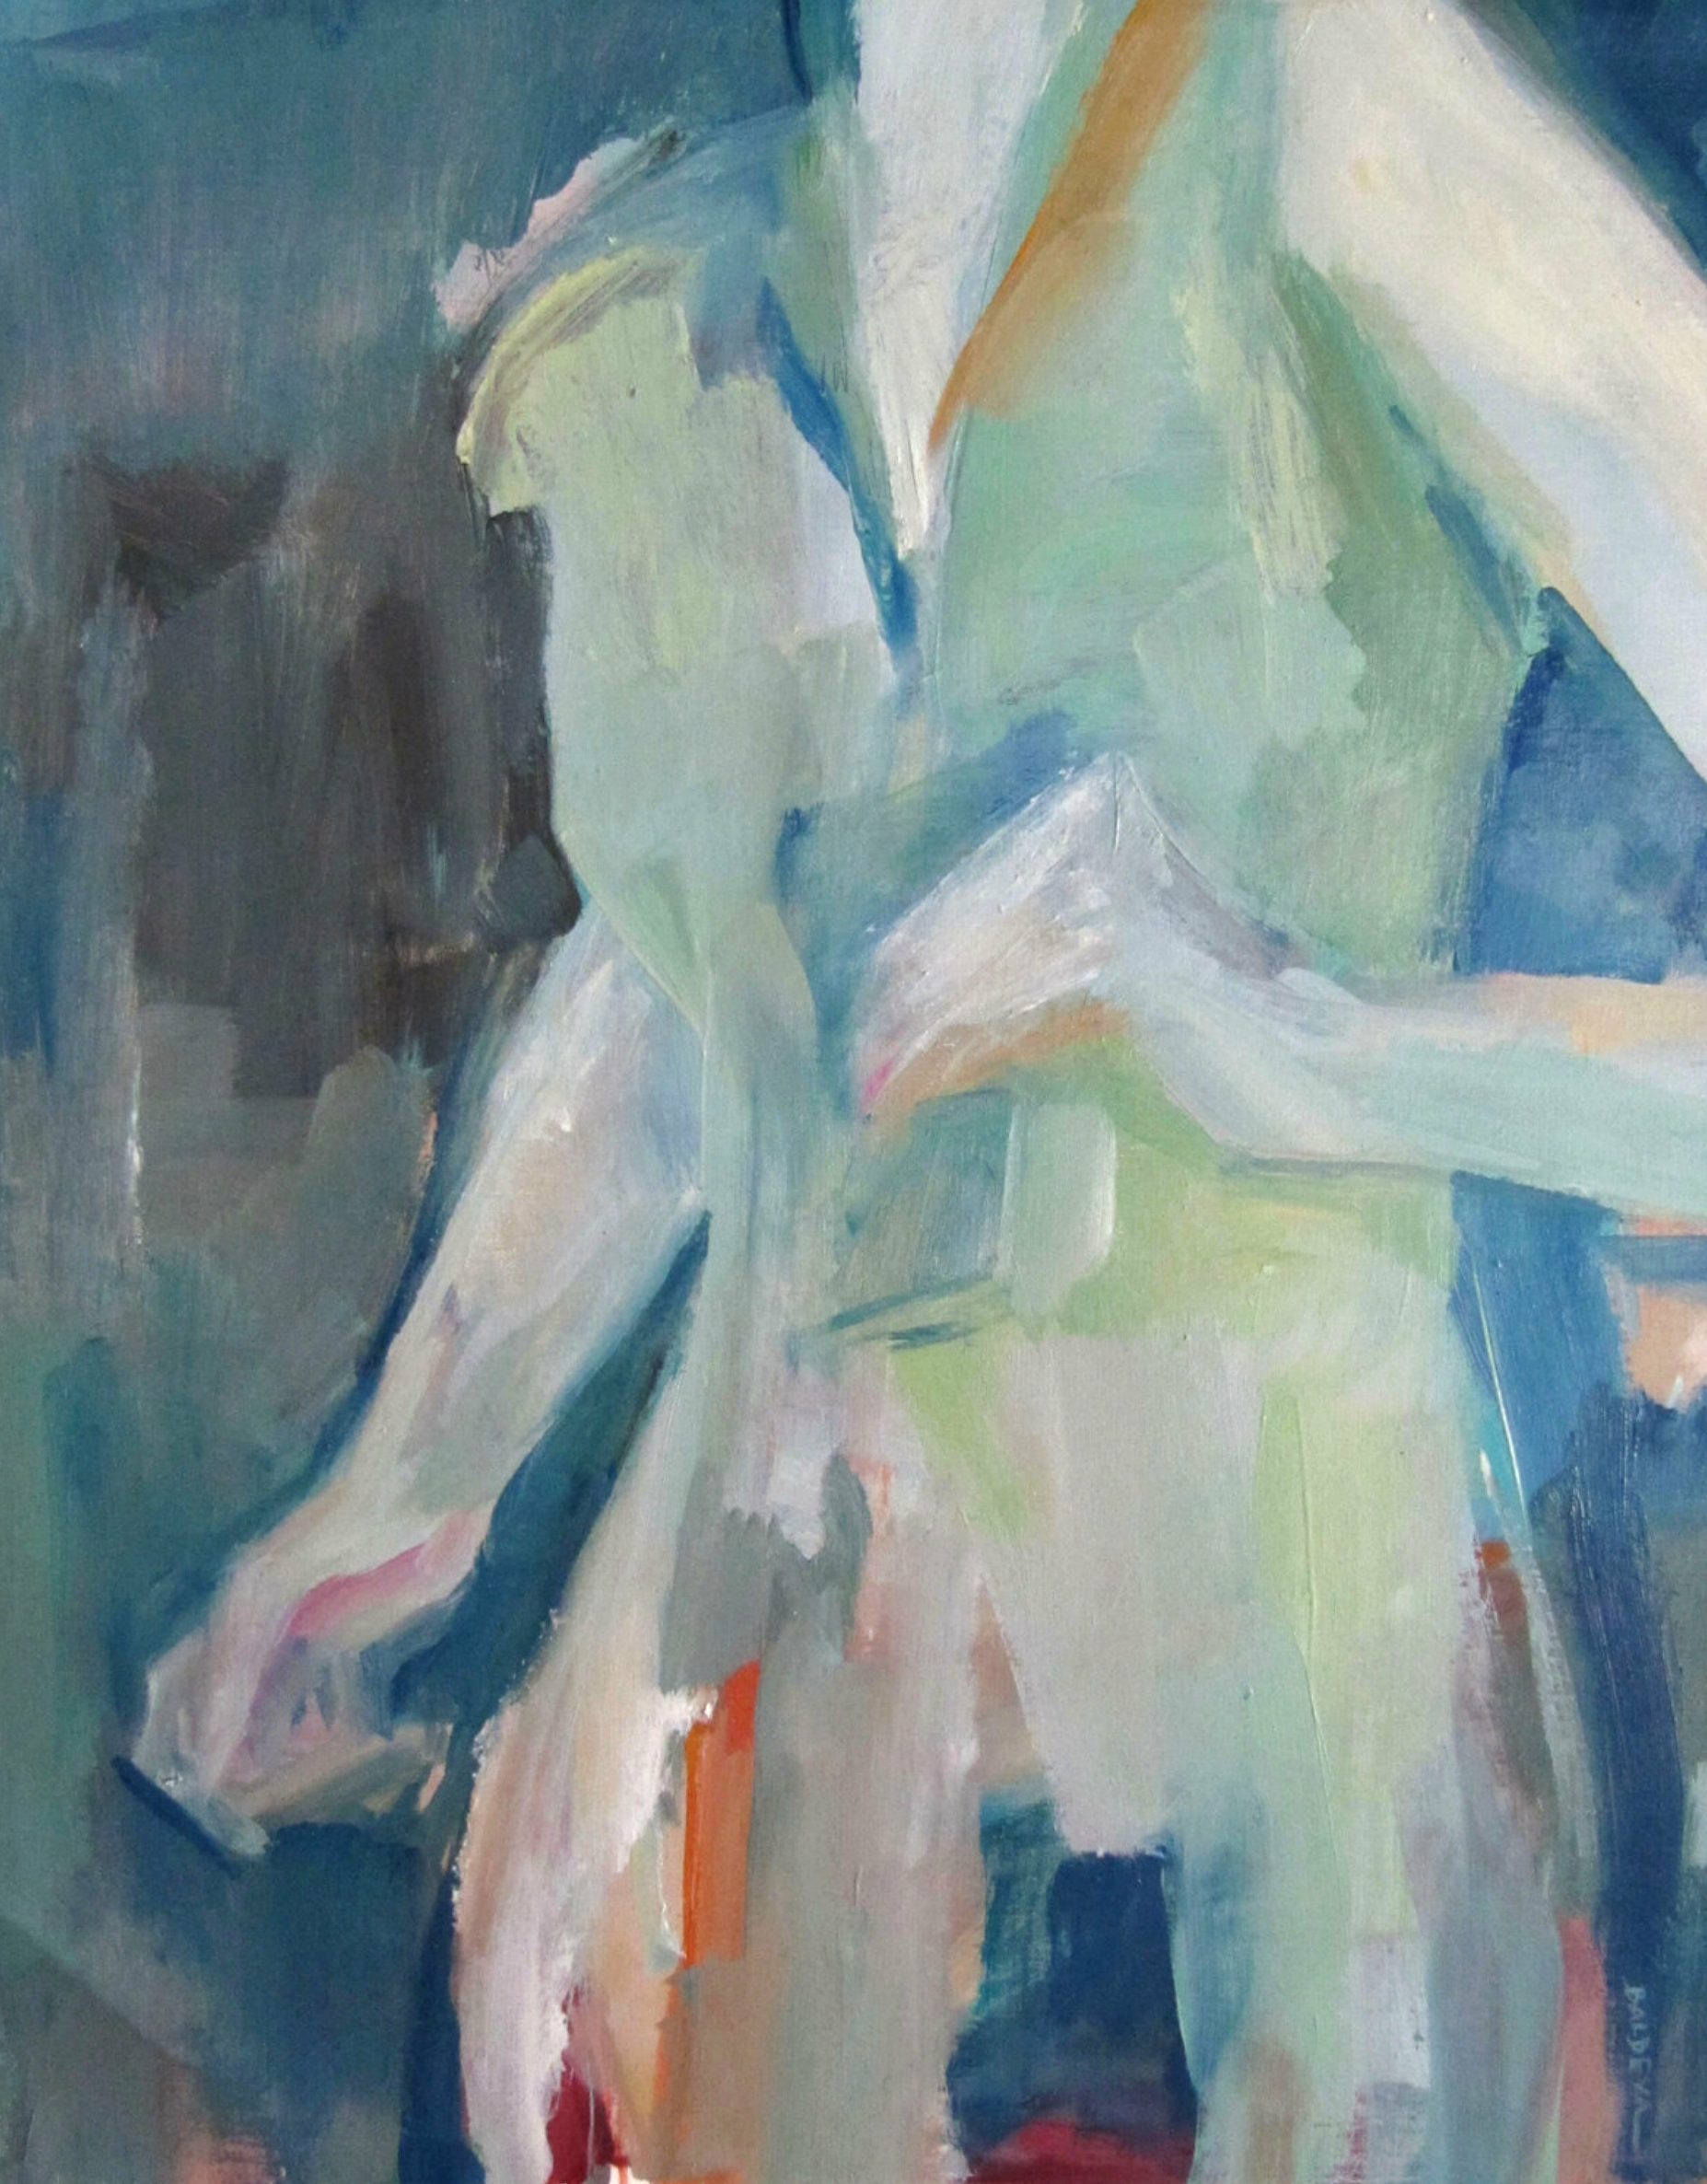 Sylvia Baldeva's "Cource" zeigt ein, semi-abstraktes gemaltes Ölgemälde.  Nahaufnahme einer Frau, die eine Lebensszene läuft.